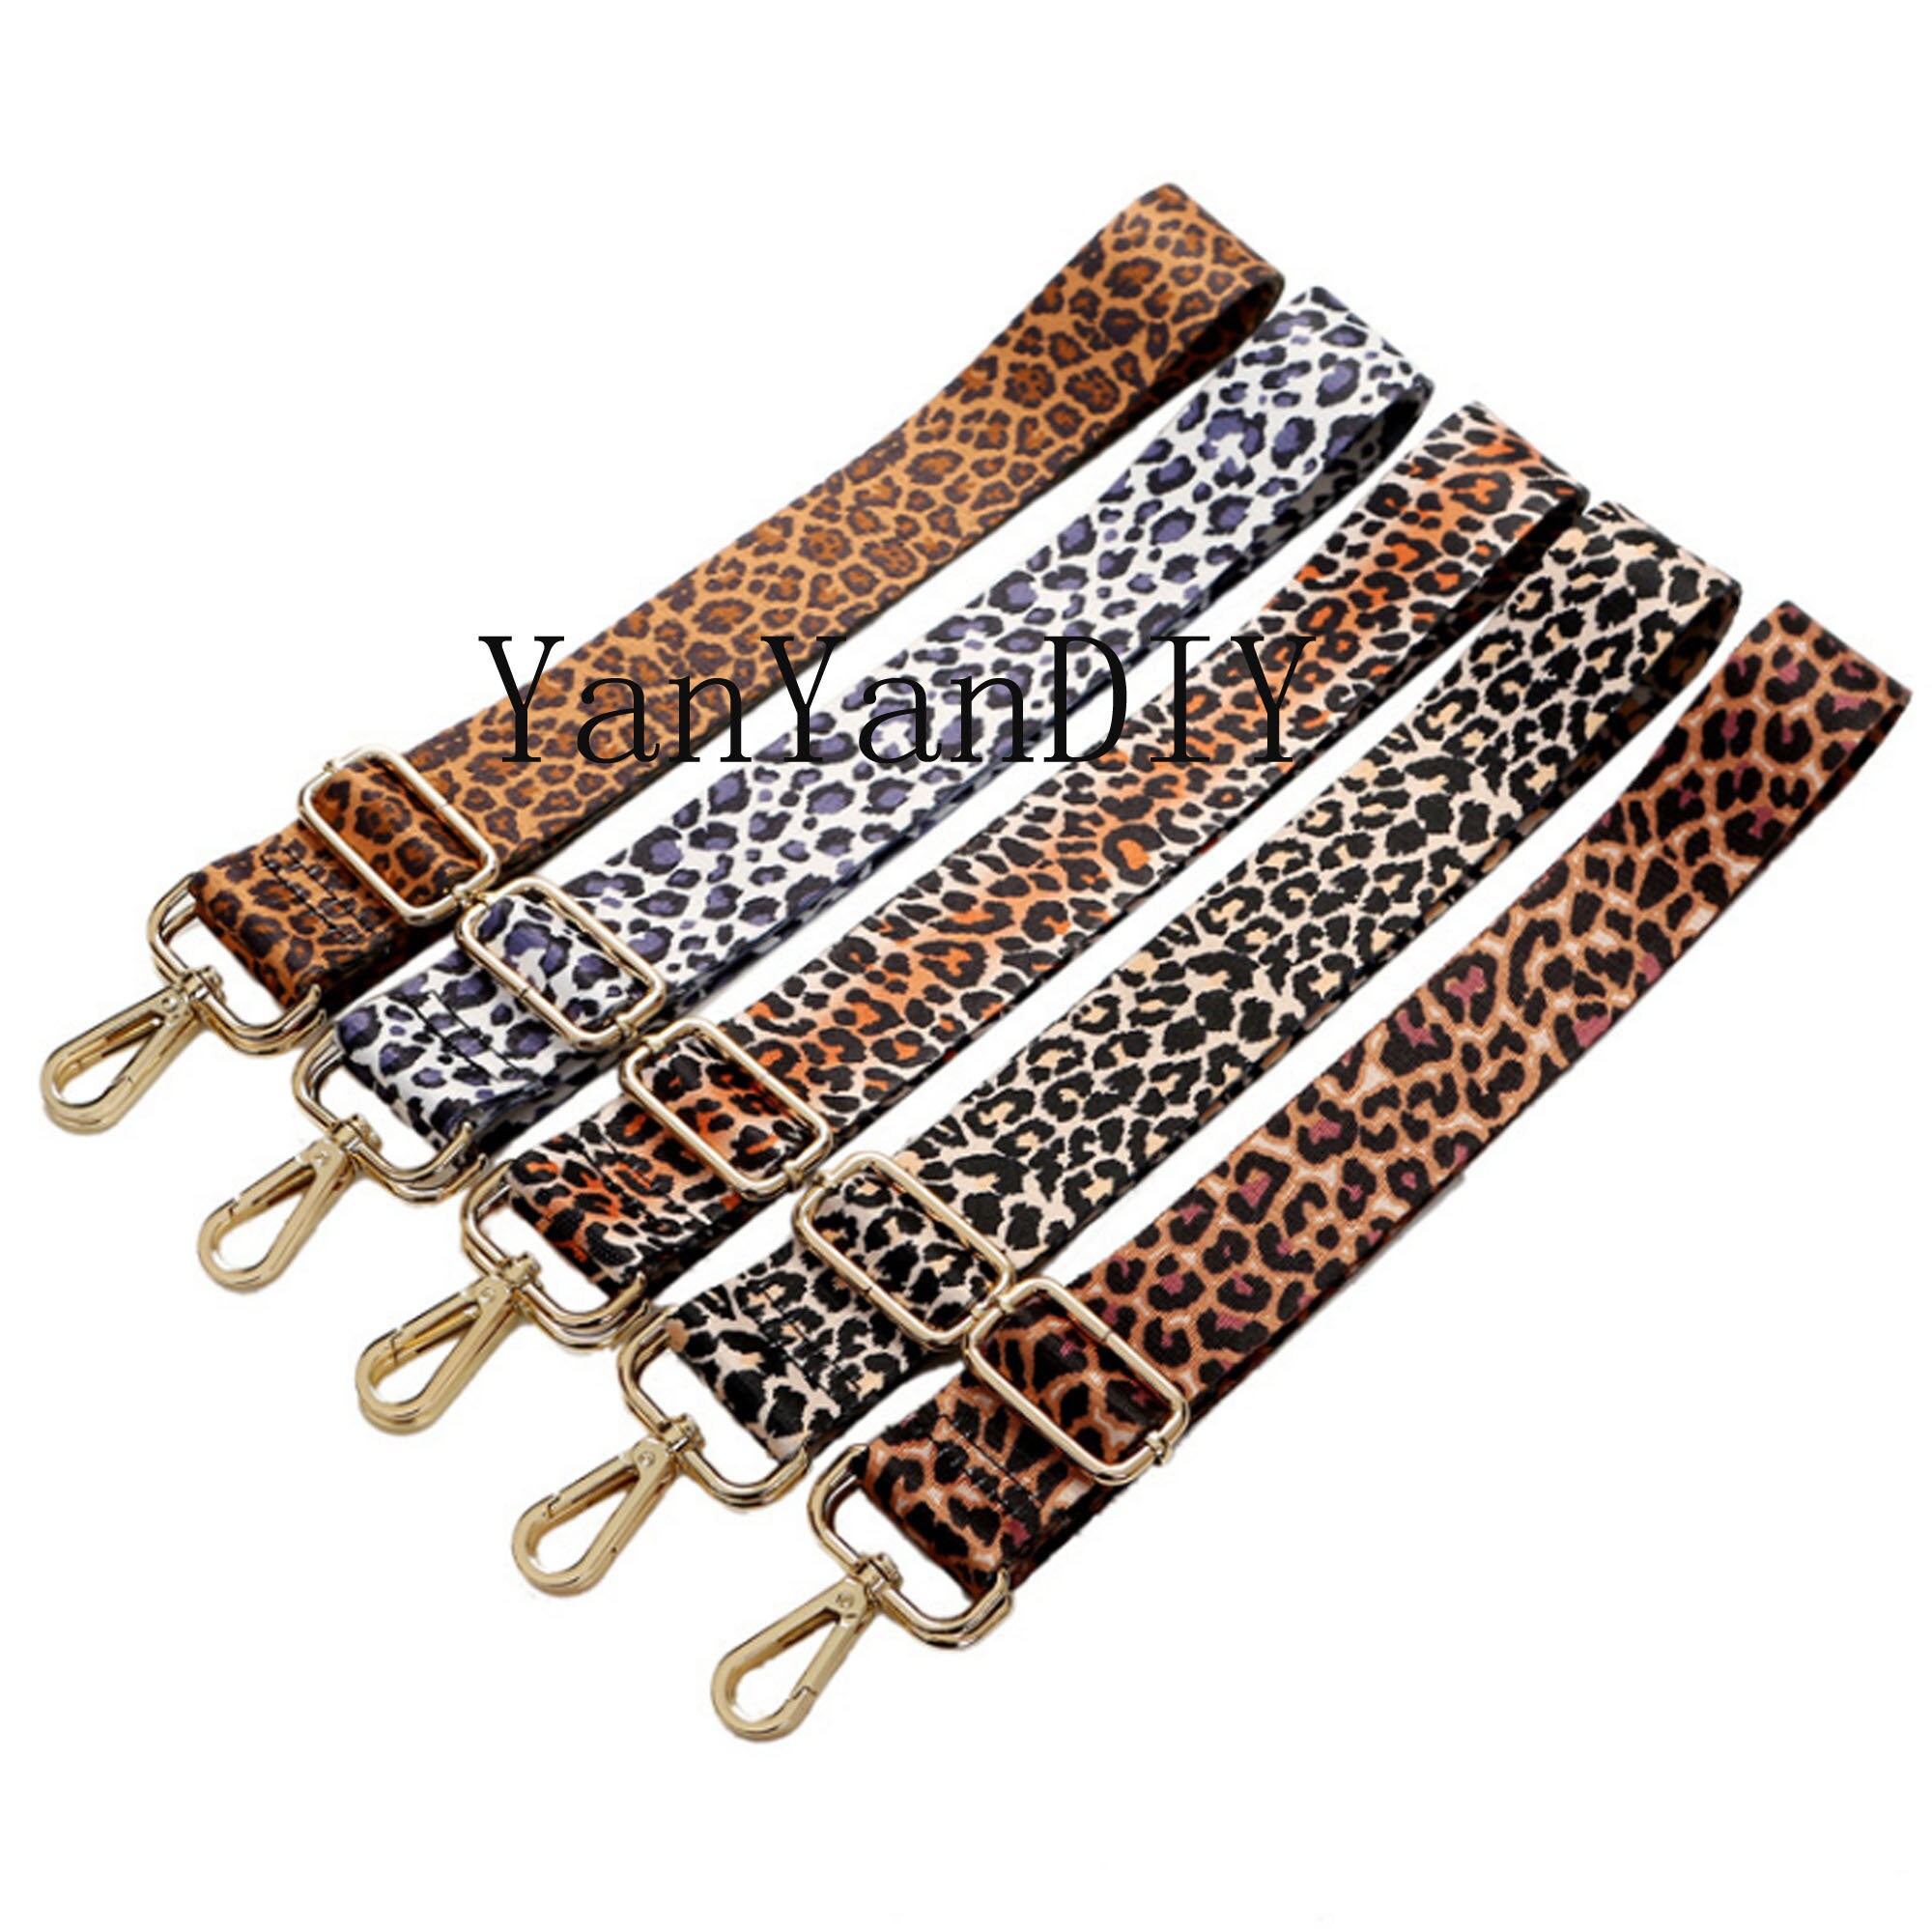 7colors55 Adjustable Bag Strap1.5 Width Leopard - Etsy